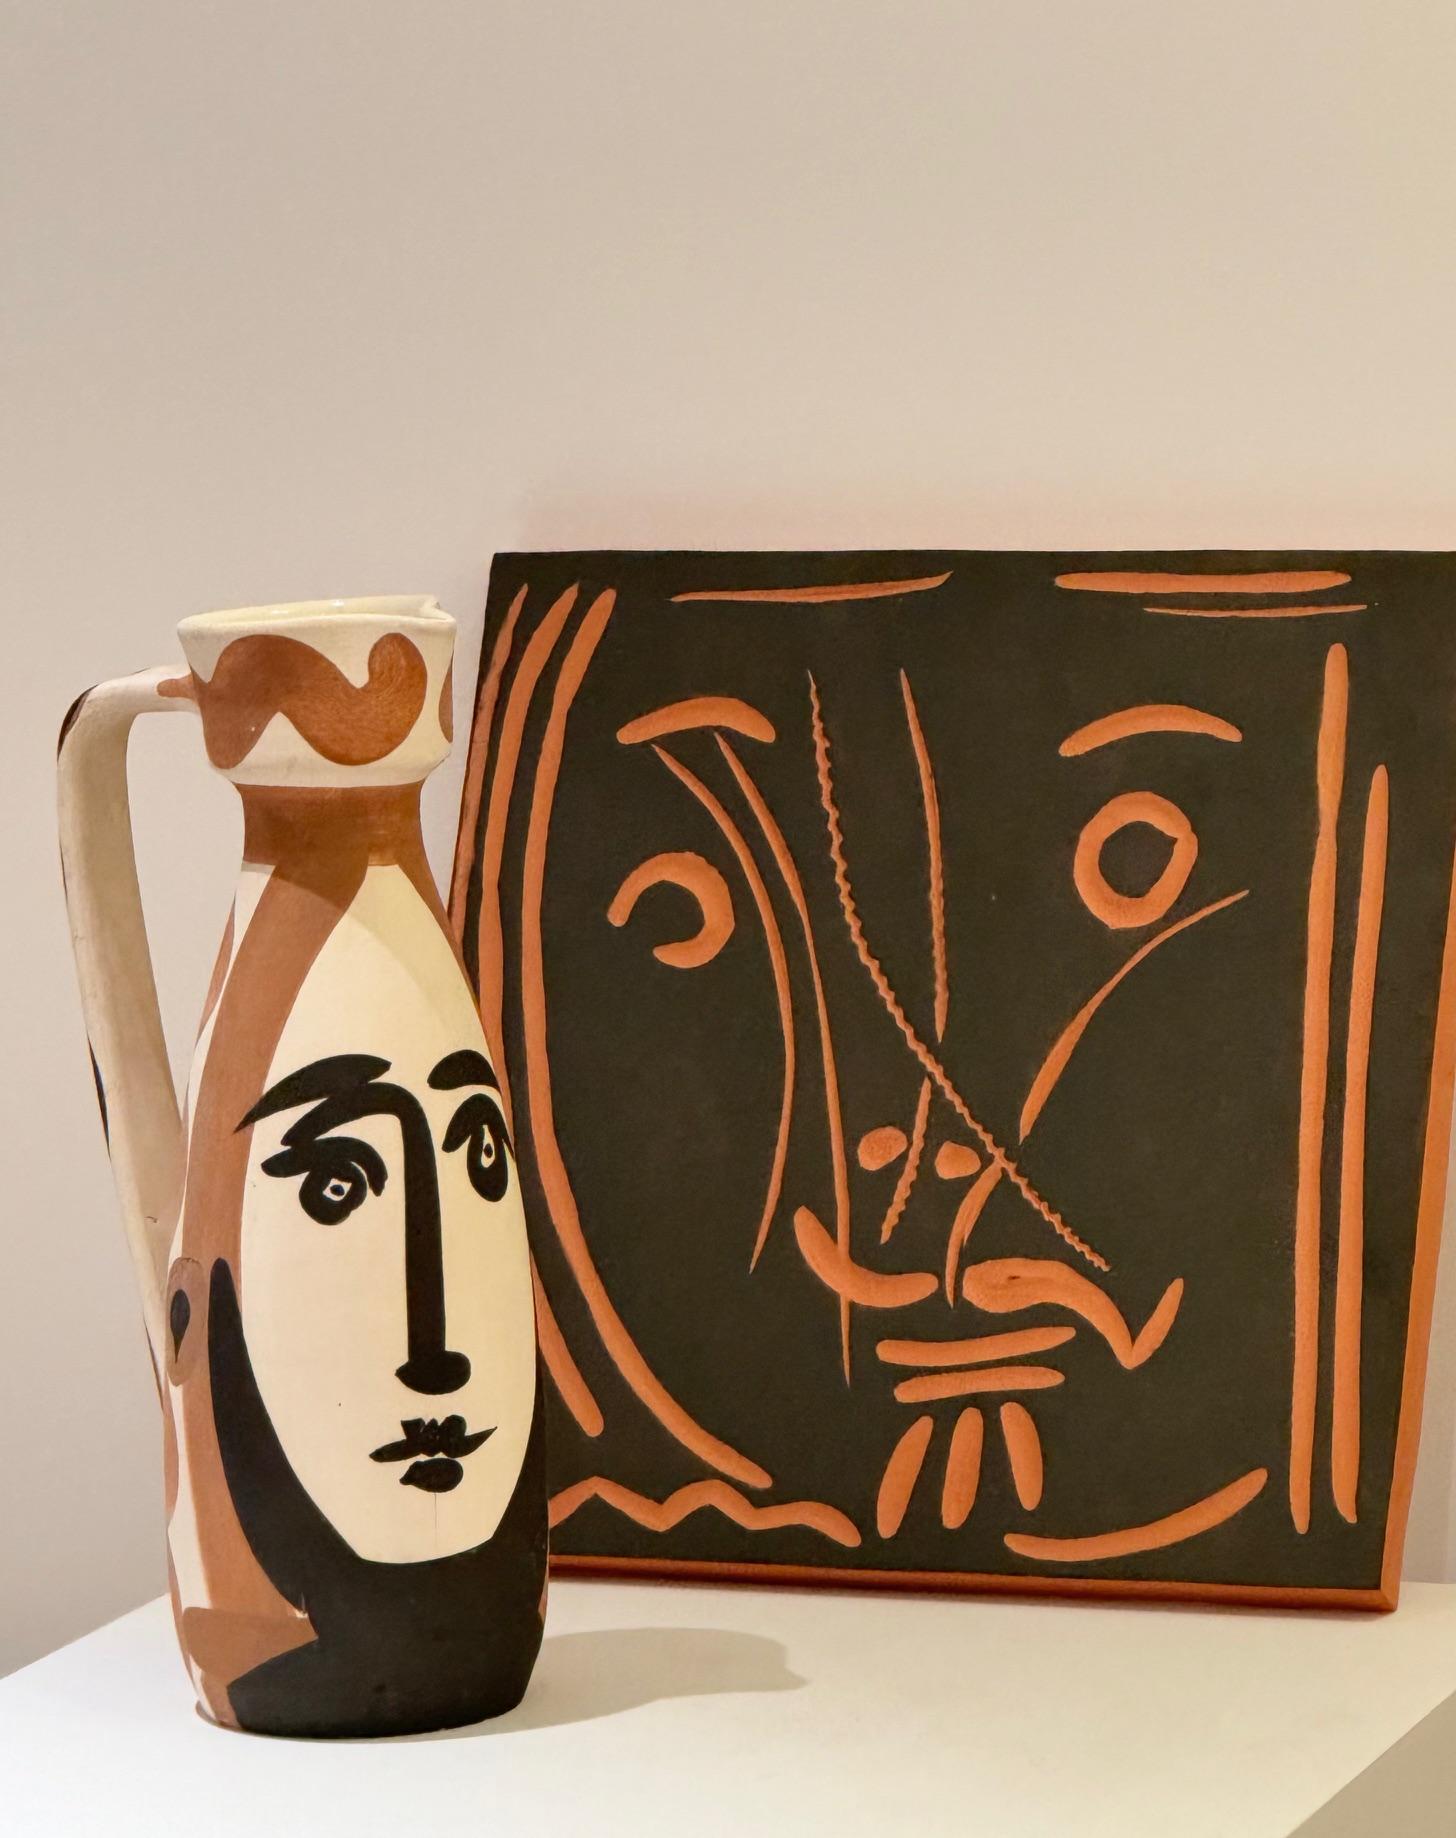 French Picasso Ceramic Edition Madoura , Square plaque 